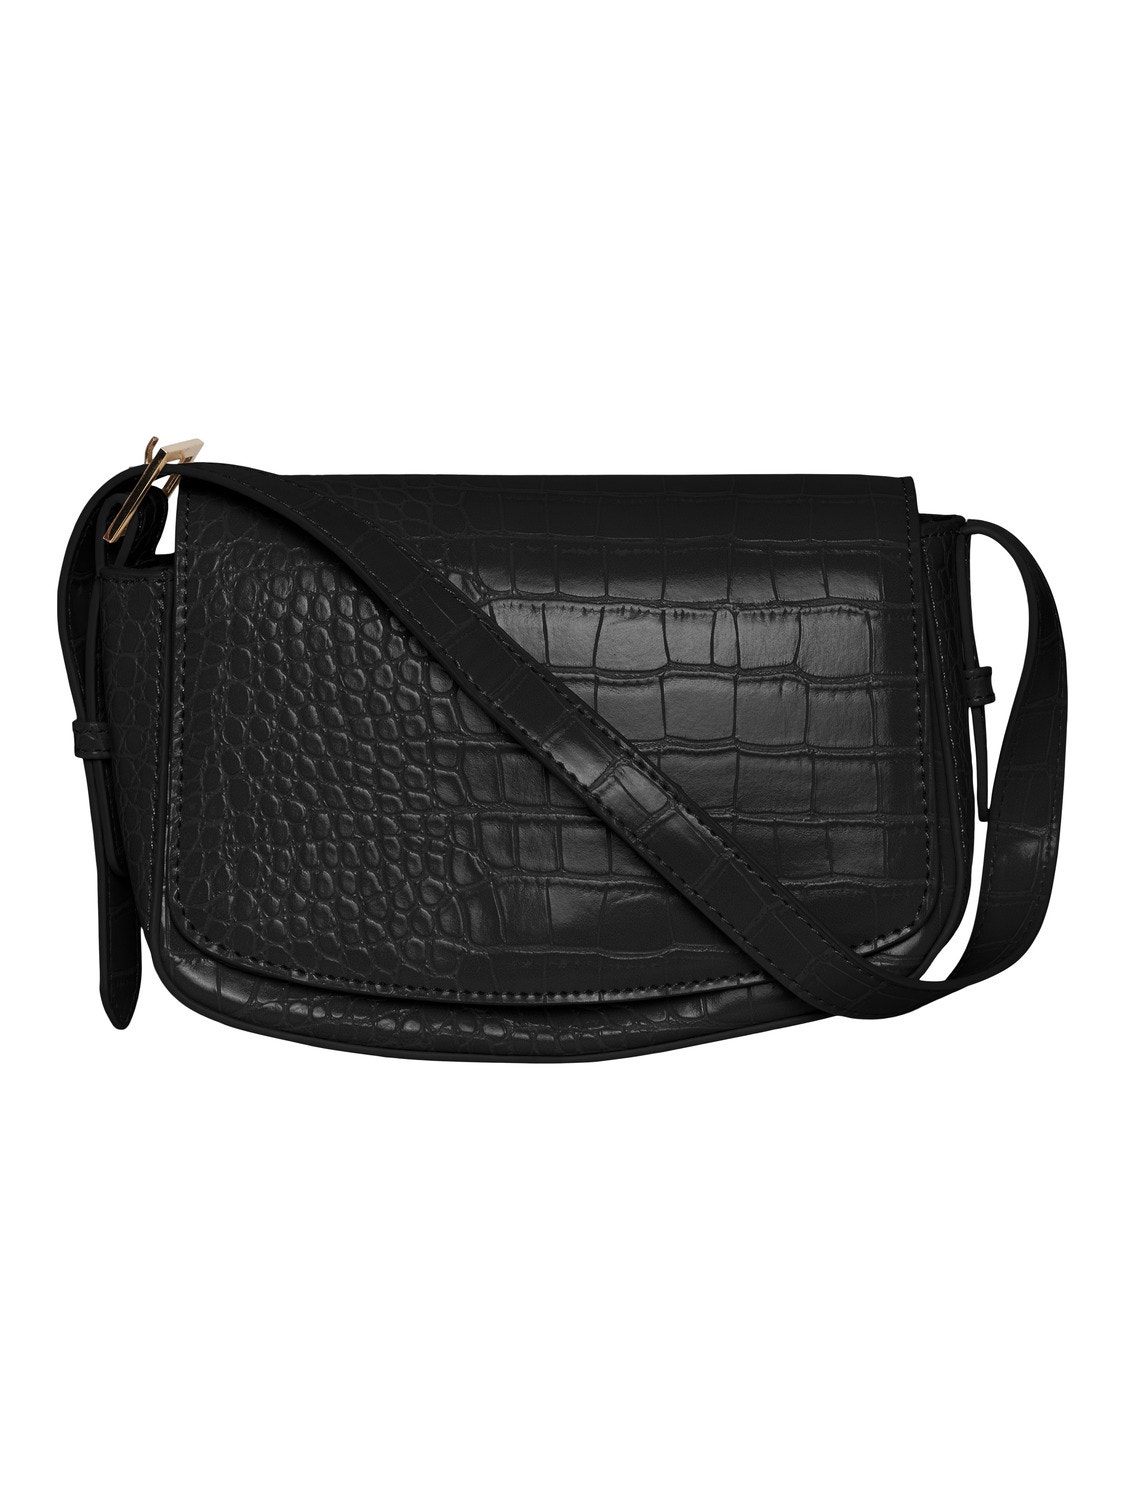 Vero Moda Adjustable strap Bag -Black - 10308254